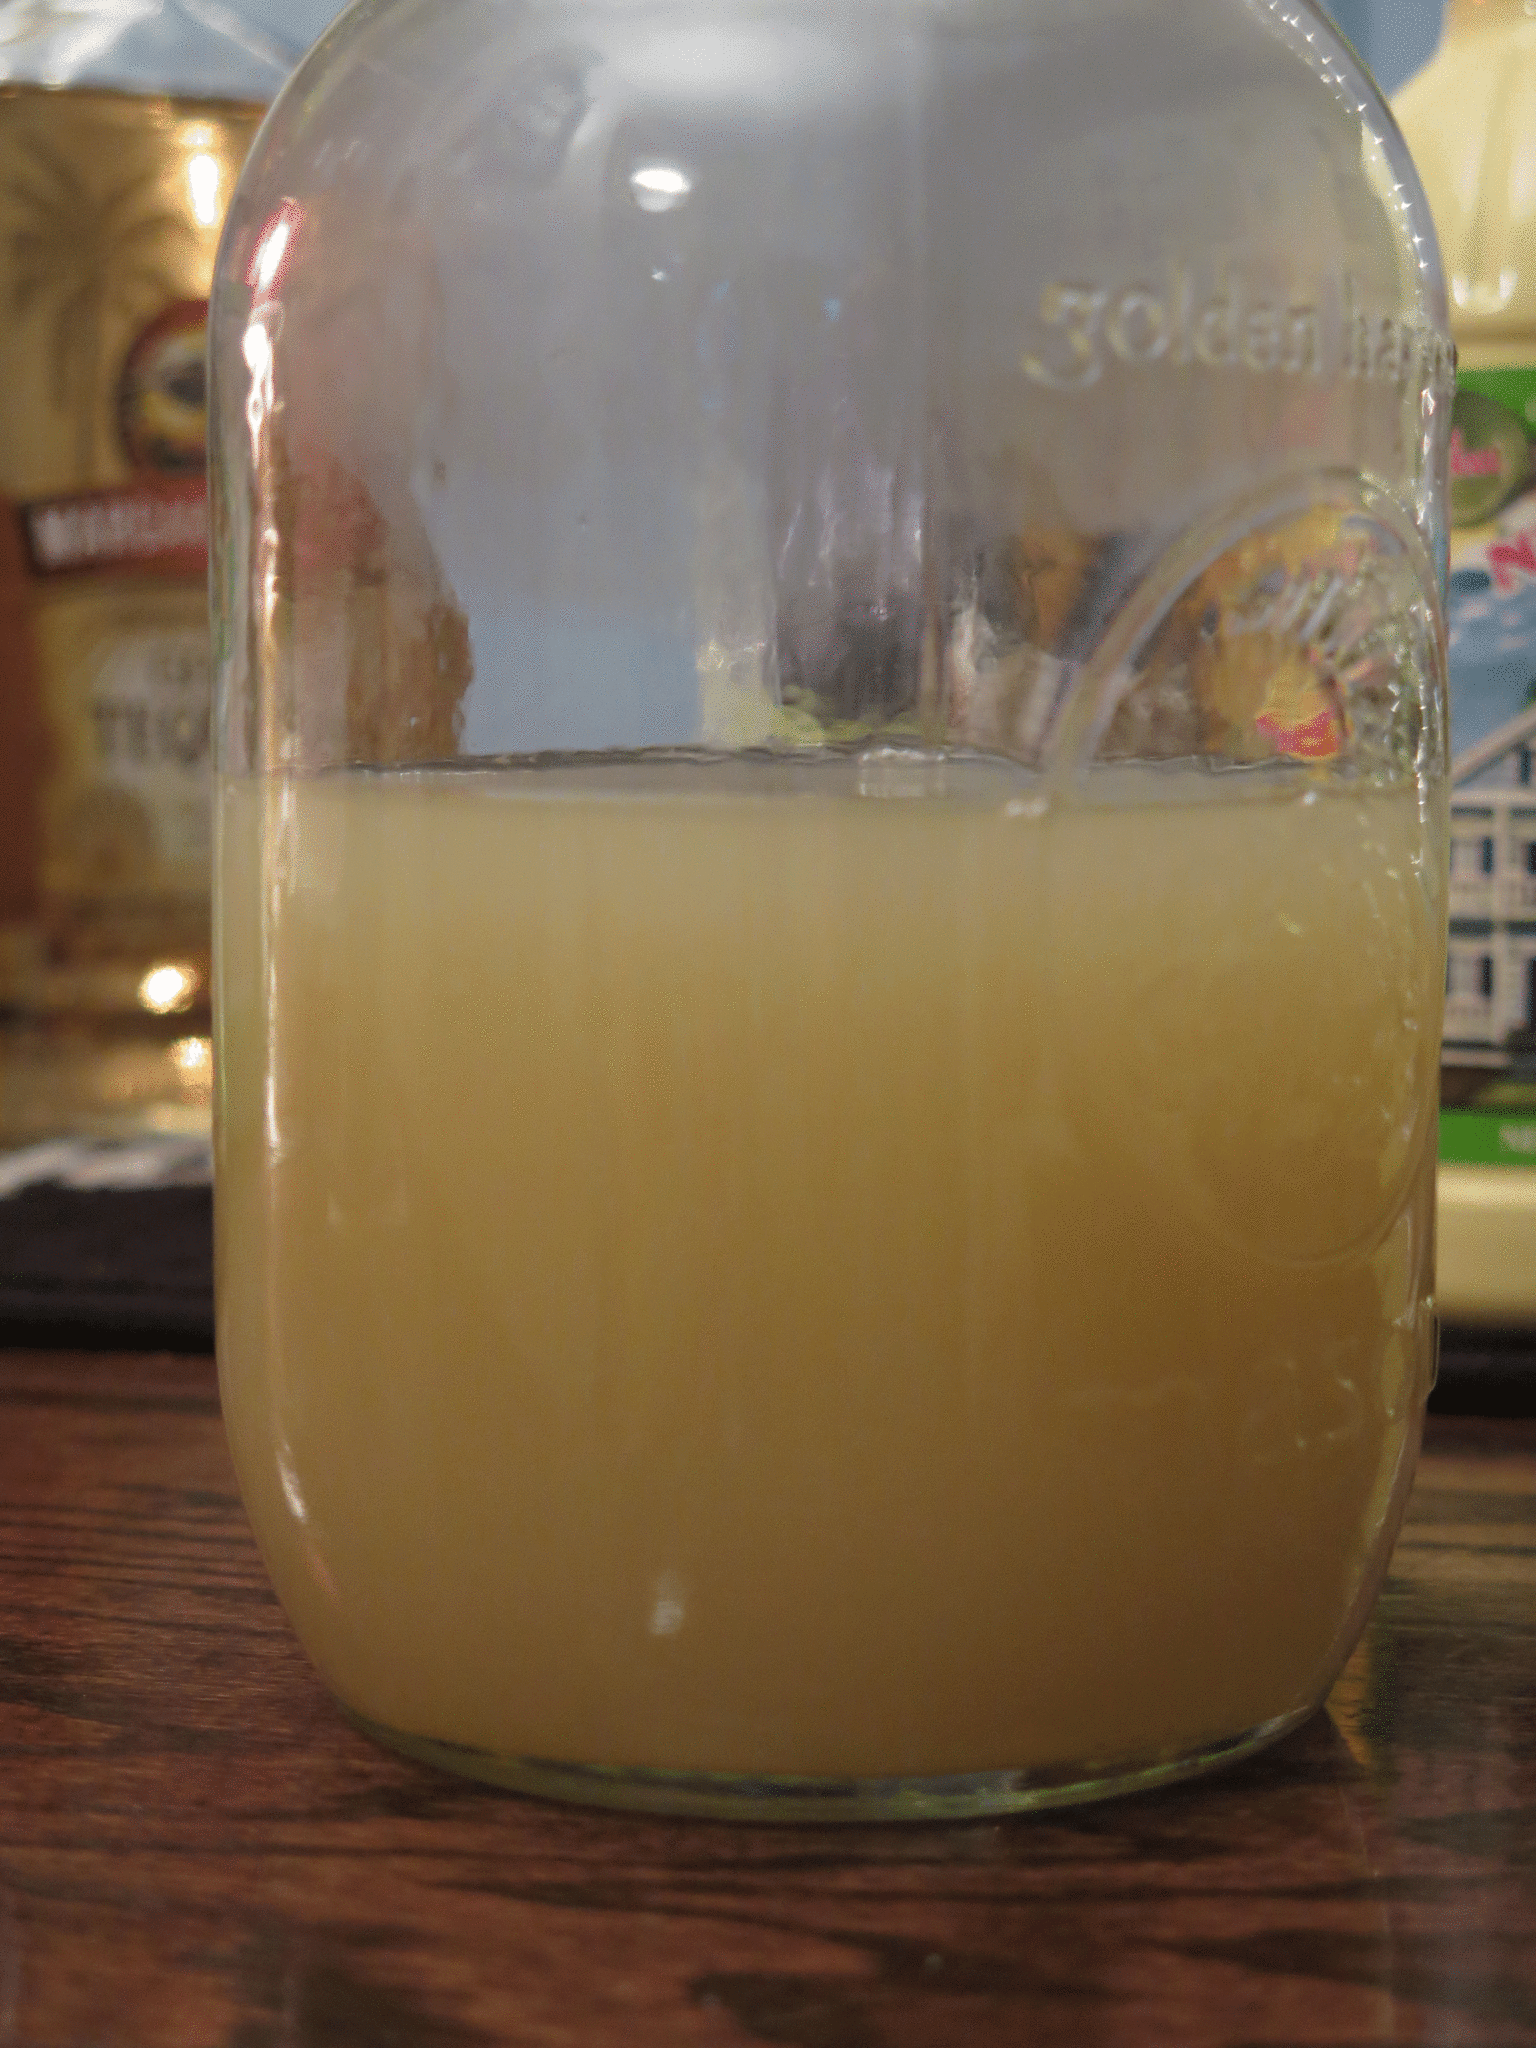 Homemade Margarita Mix